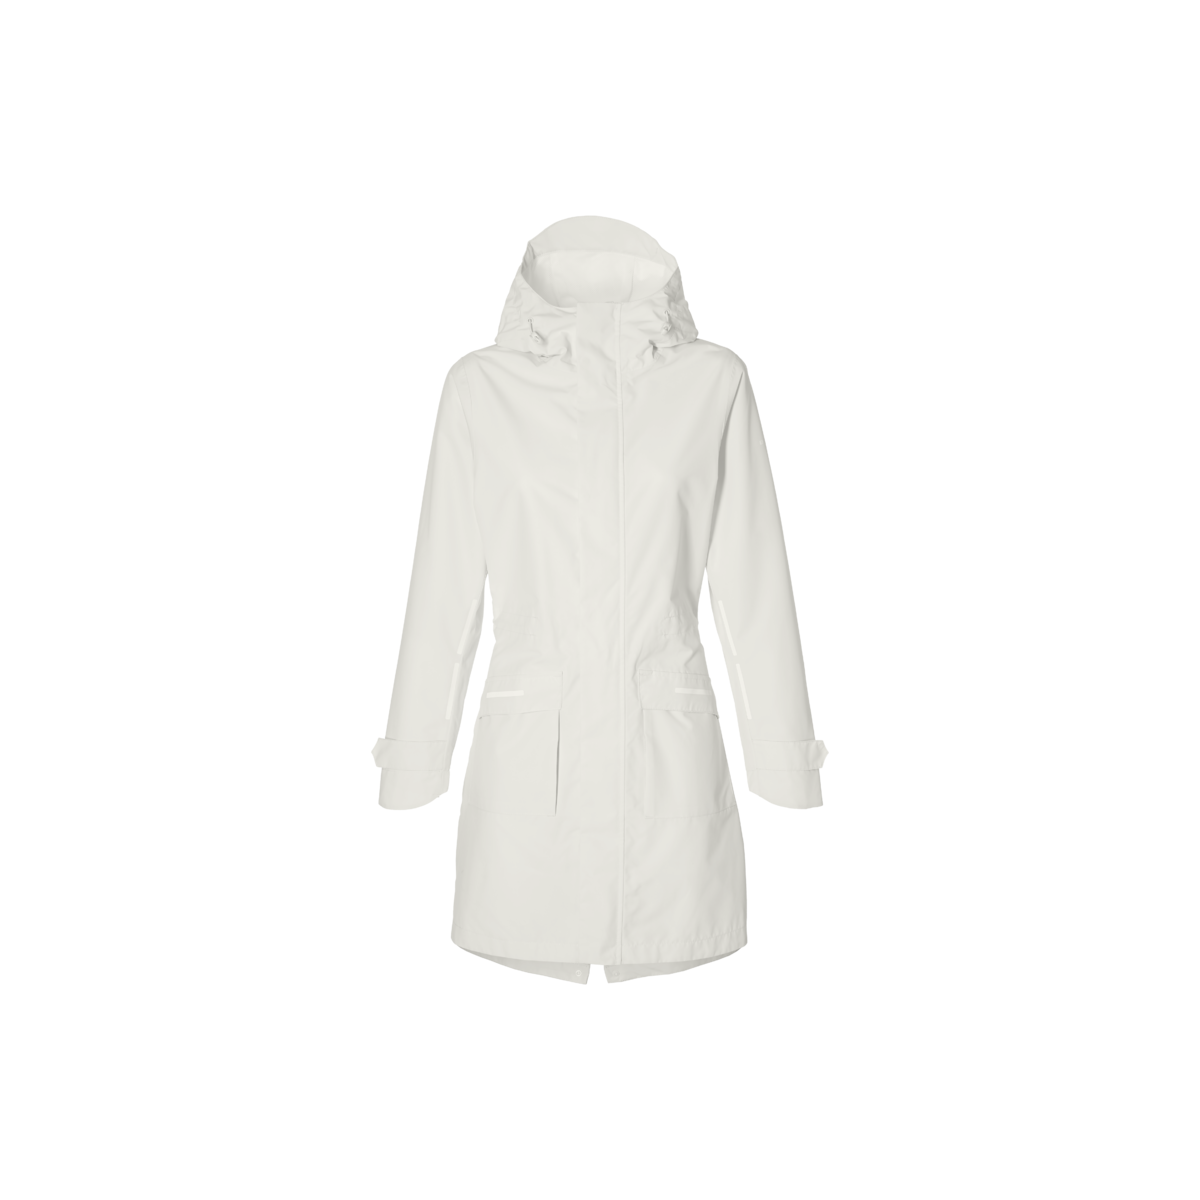 Basil Mosse veste de pluie Parka femmes, blanc